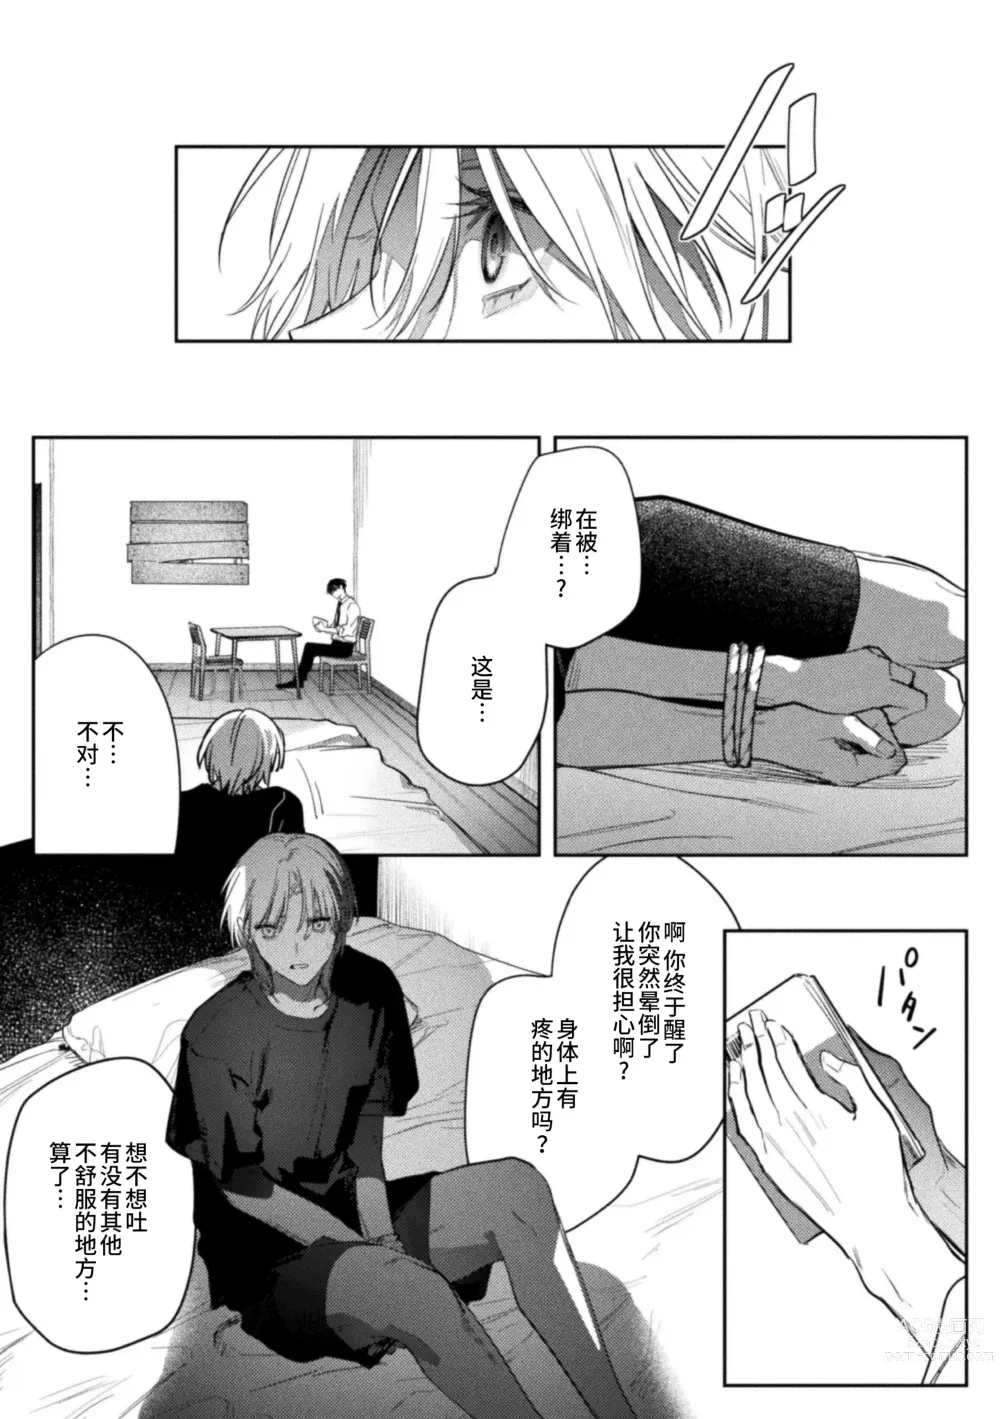 Page 6 of manga Kore ga Ainara xnde Kure Zenpen+Kouhen